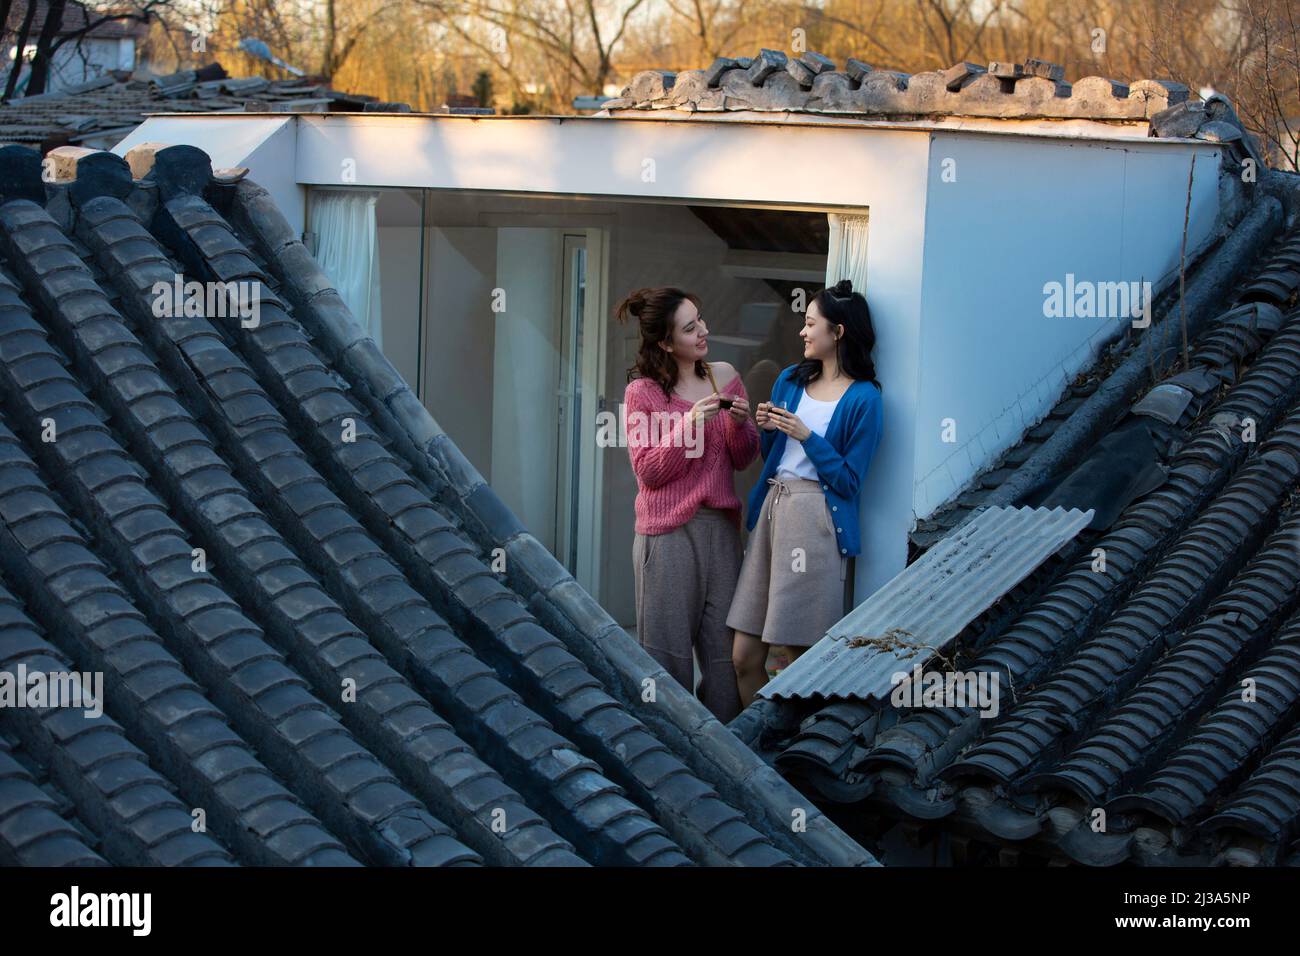 Mujeres jóvenes chinas se relajan en el techo de una casa tradicional en el patio de Beijing - foto de archivo Foto de stock